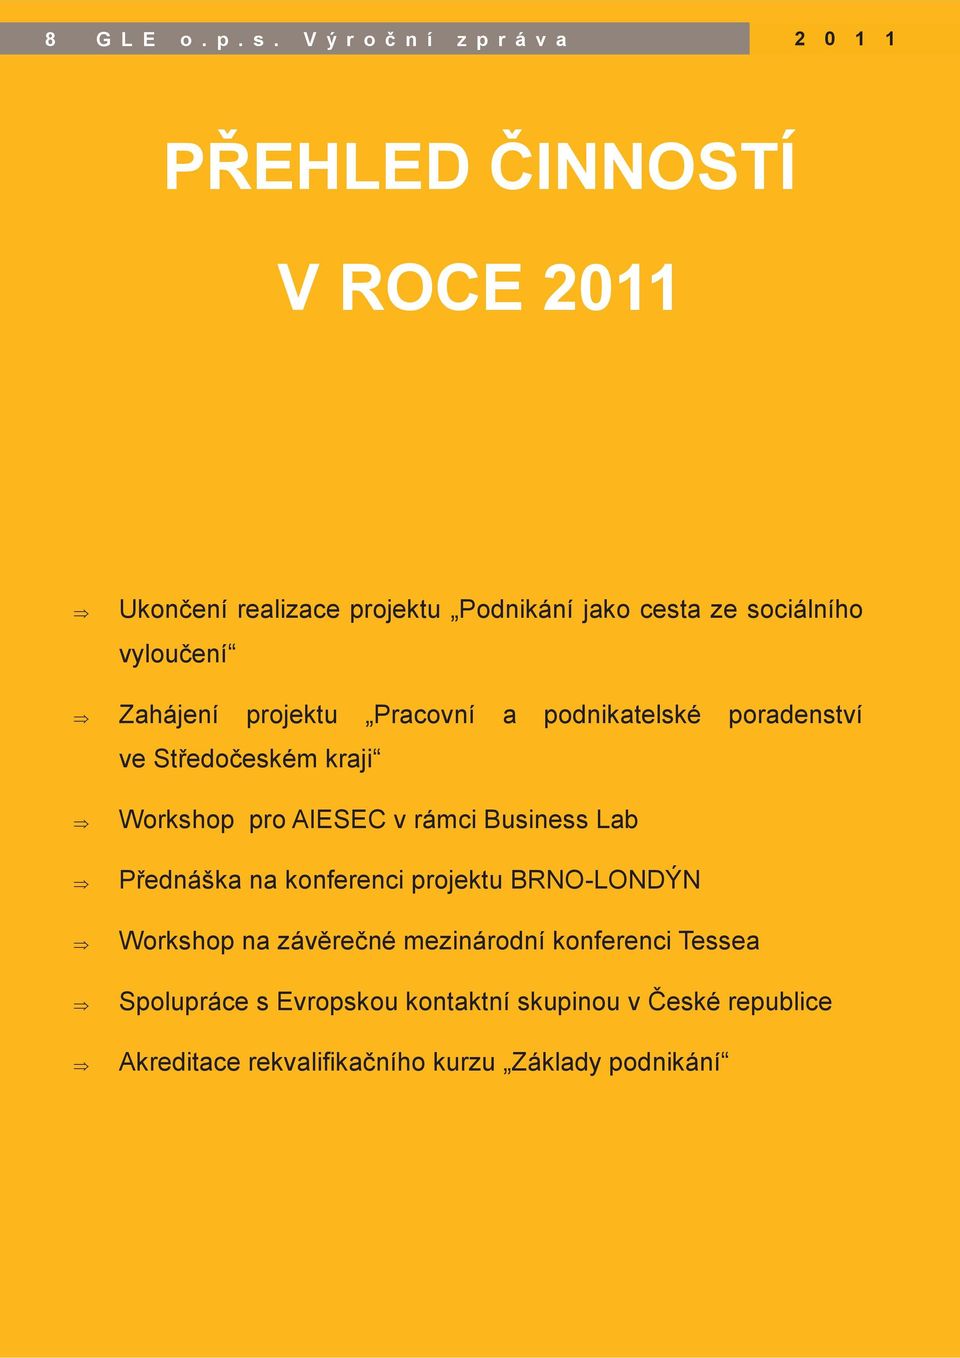 sociálního vyloučení Zahájení projektu Pracovní a podnikatelské poradenství ve Středočeském kraji Workshop pro AIESEC v